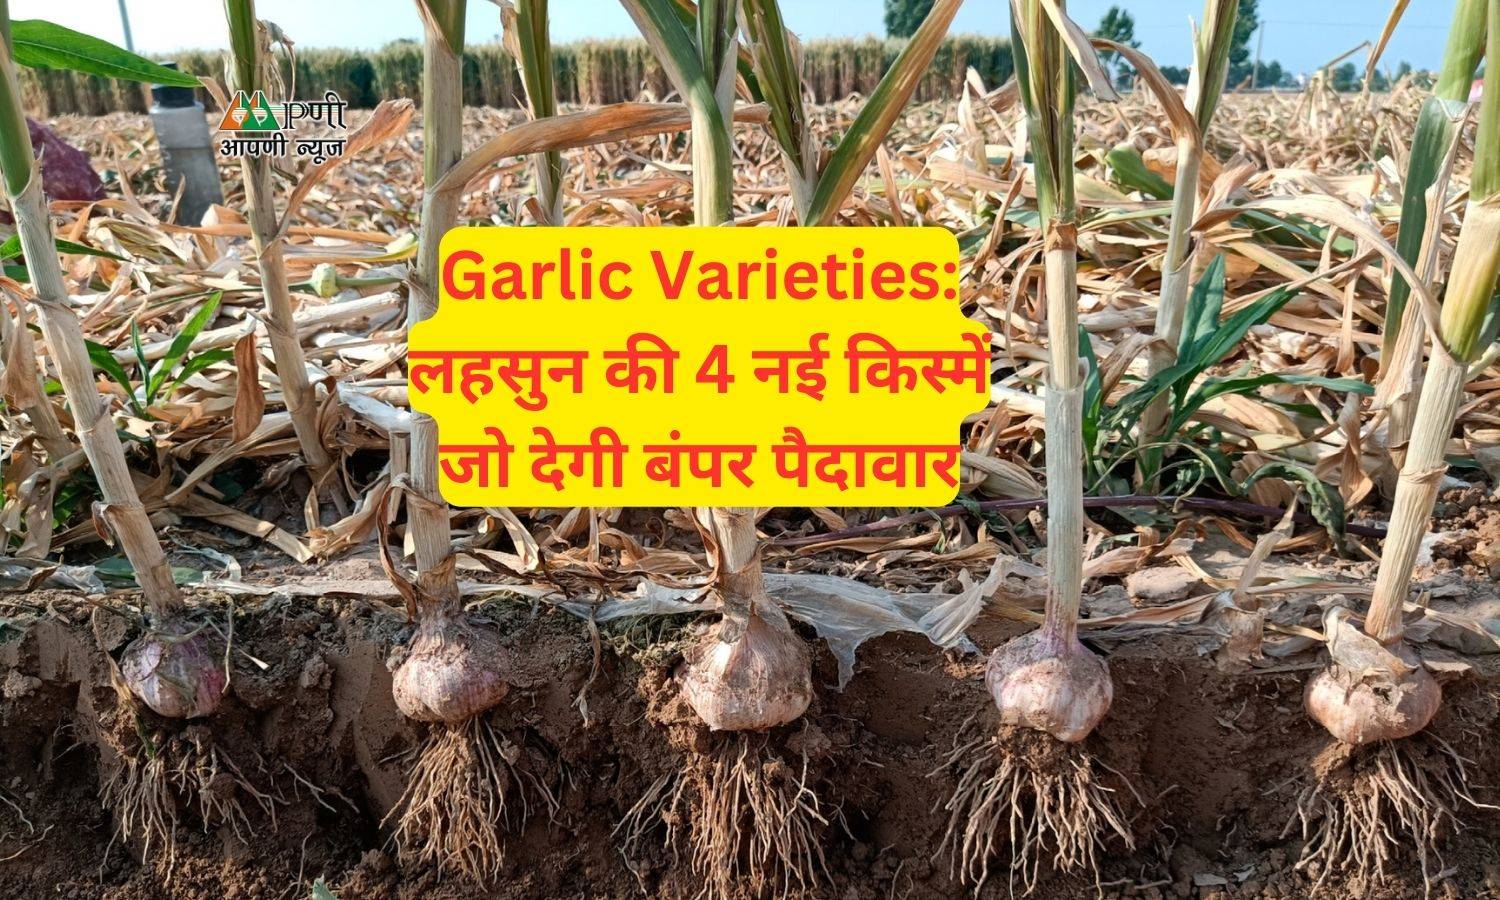 Garlic Varieties: लहसुन की 4 नई किस्में जो देगी बंपर पैदावार